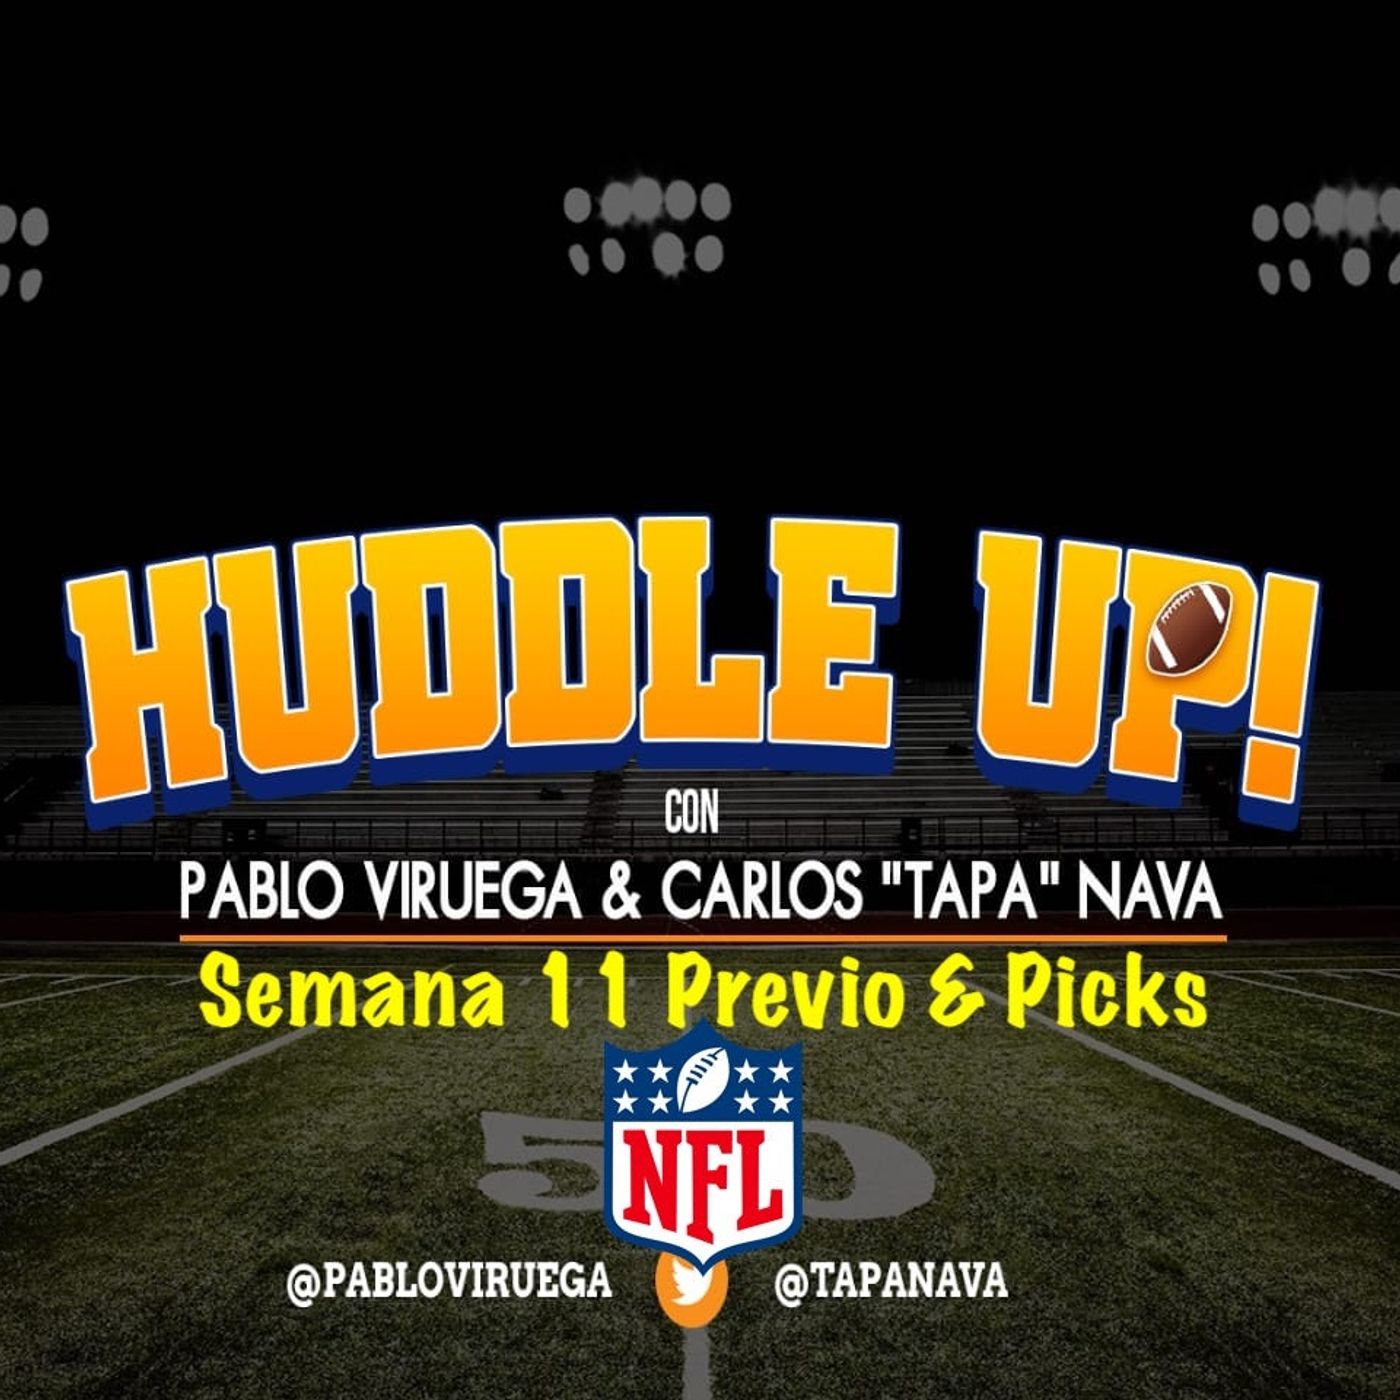 #HuddleUP Semana 11 #NFL Previo & Picks @TapaNava y @PabloViruega